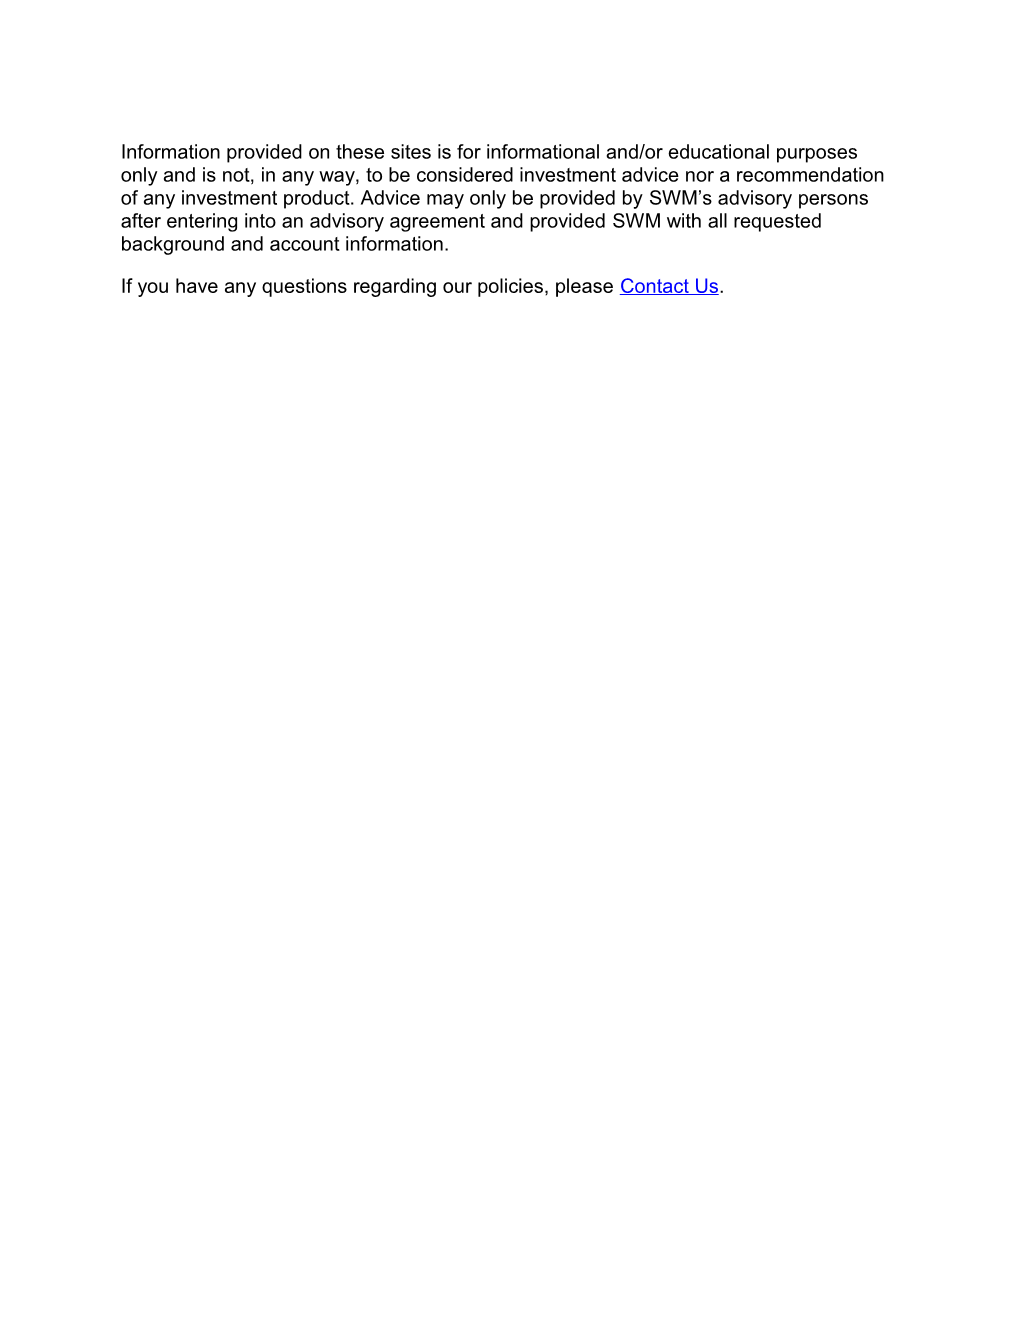 Seacrest Wealth Management, LLC Website Disclosures